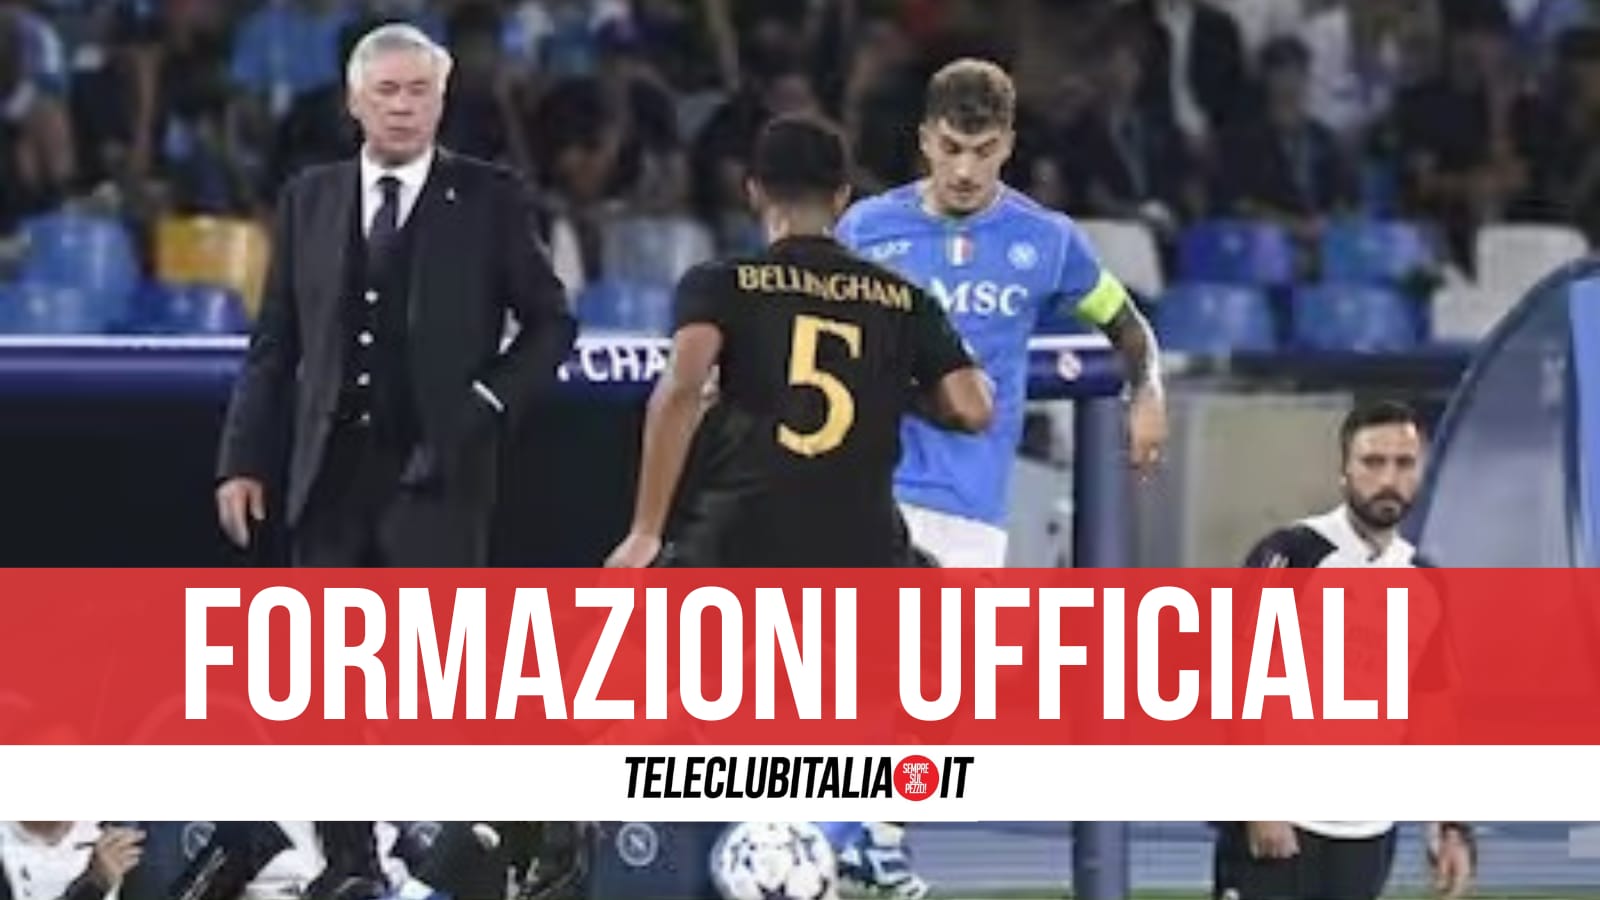 Formazioni Ufficiali di Real Madrid-Napoli: Simeone dal 1', poi staffetta con Osimhen